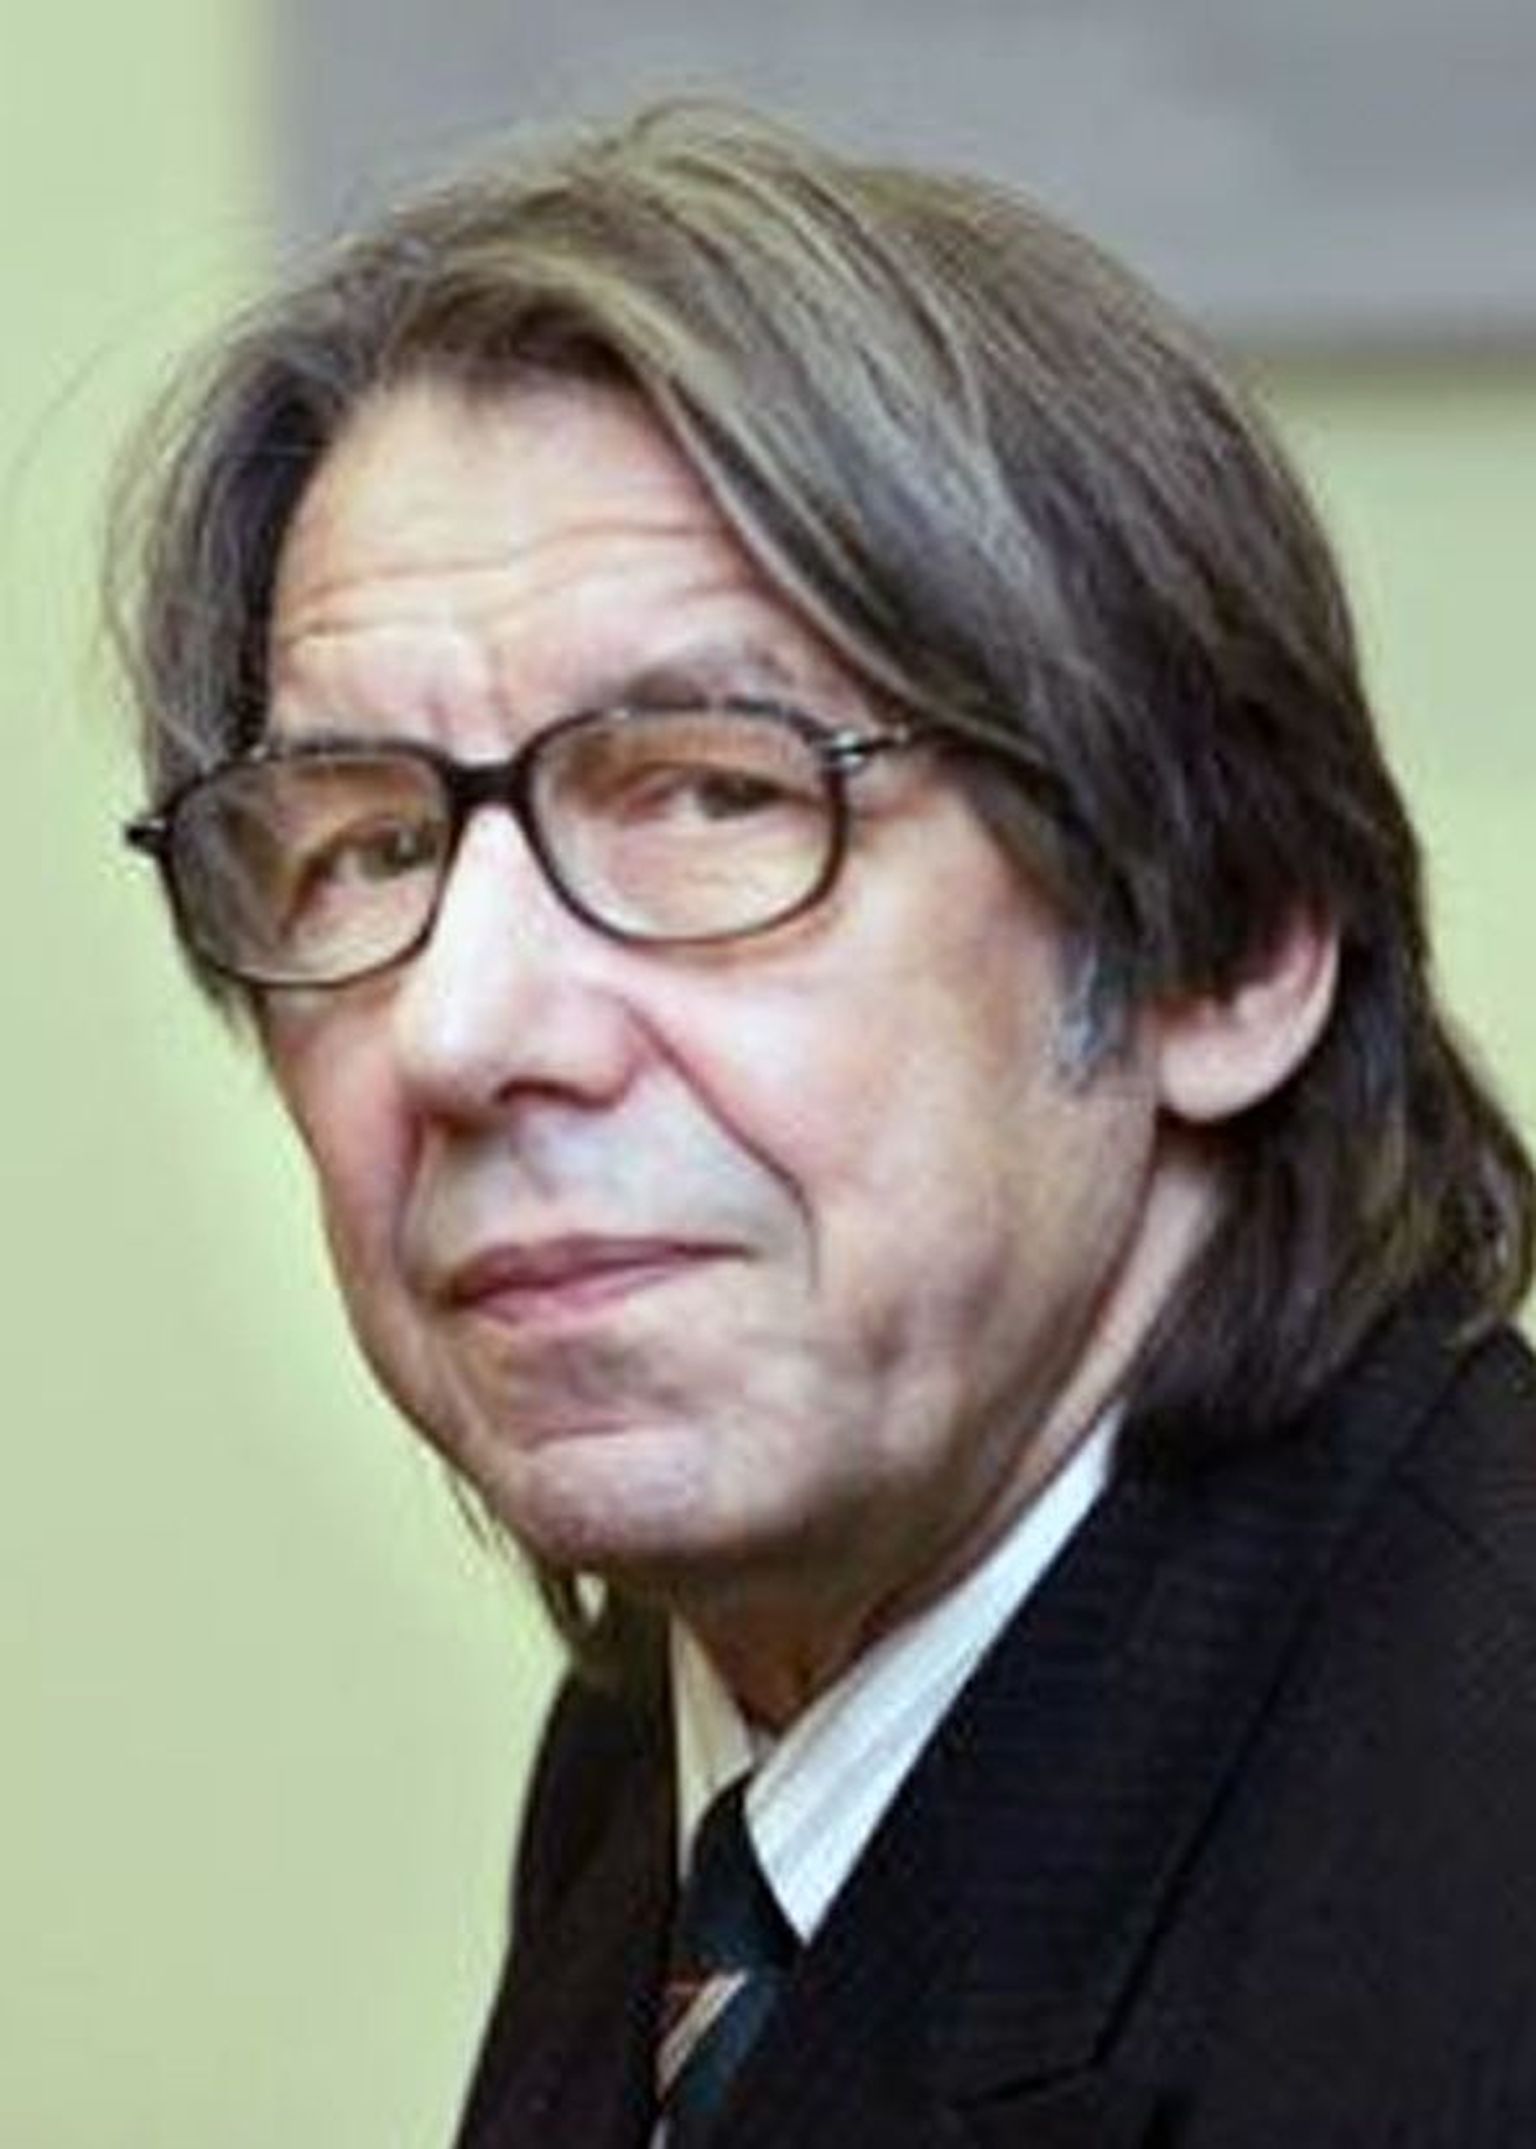 Hando Runnel

Kirjandus, valitud 2012

Vabakutseline kirjanik (alates 1971)

Sündinud 24. novembril 1938 Järvamaal